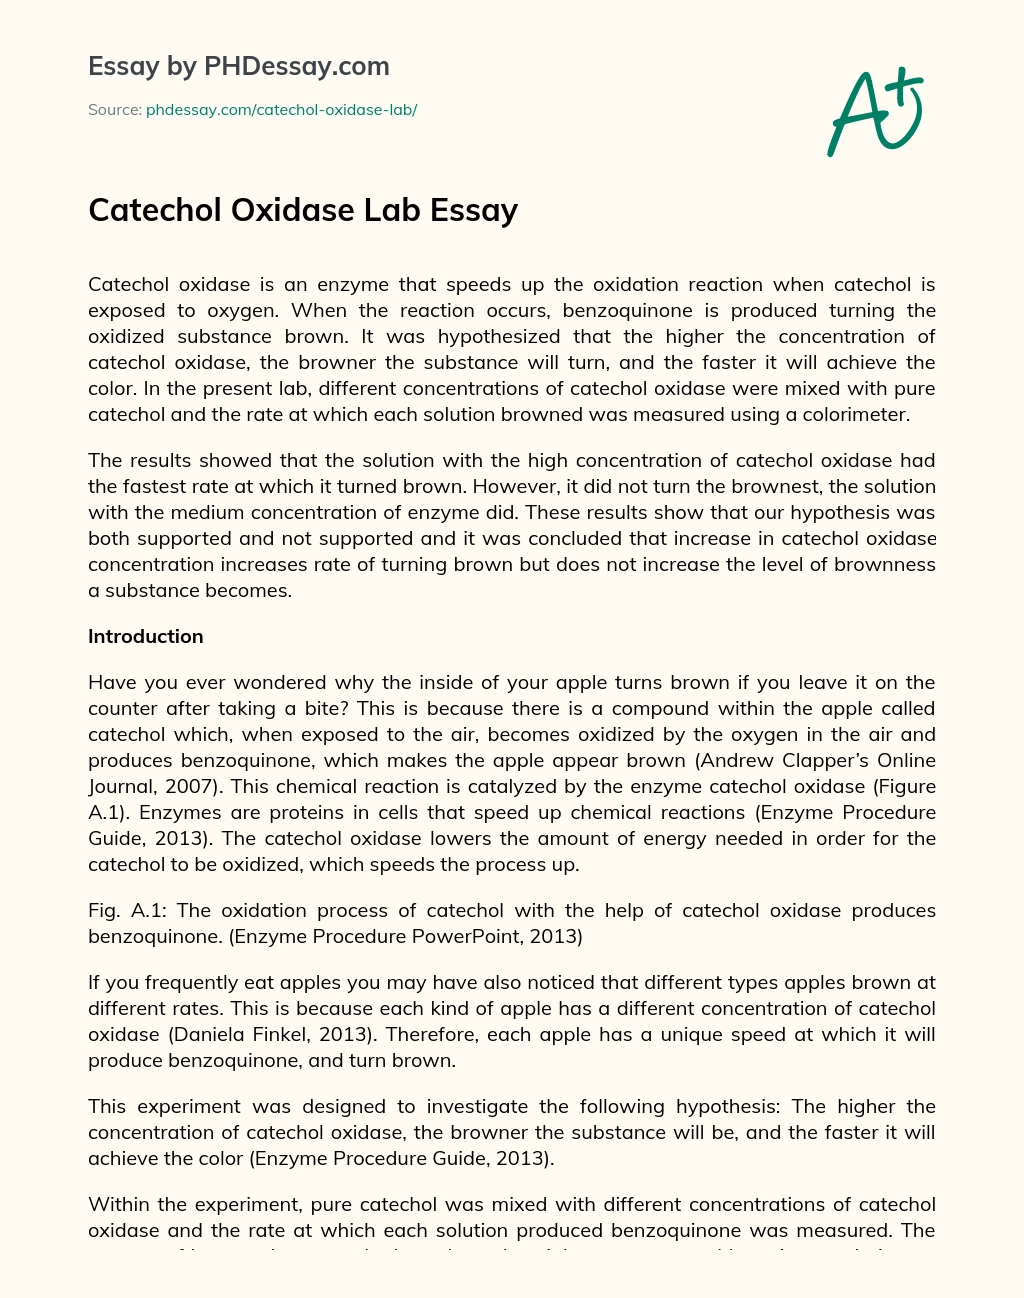 Catechol Oxidase Lab Essay essay